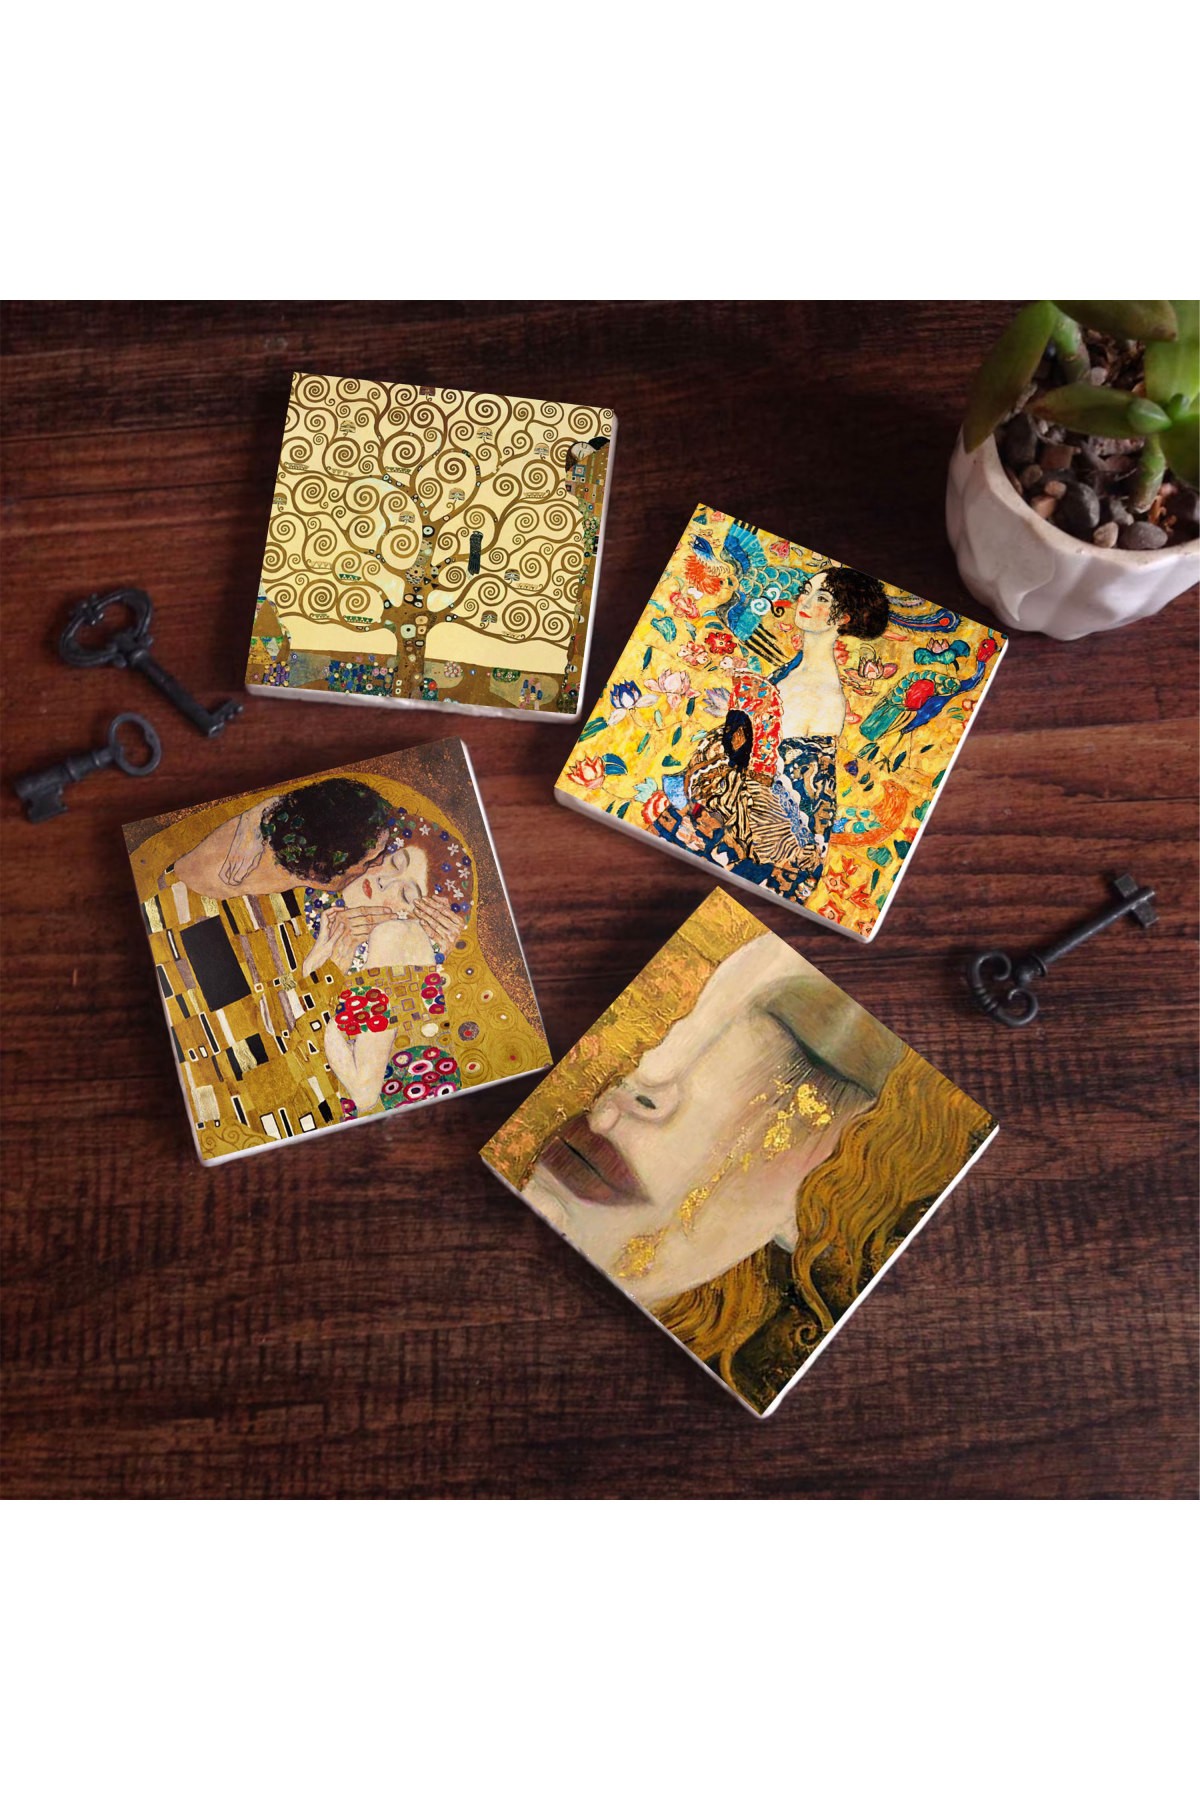 Gustav Klimt Yelpazeli Kadın, Altın Gözyaşları, Öpücük, Hayat Ağacı Taş Bardak Altlığı Masaüstü Koruyucu Altlık 4 Parça Set 10x10cm Stone Coasters